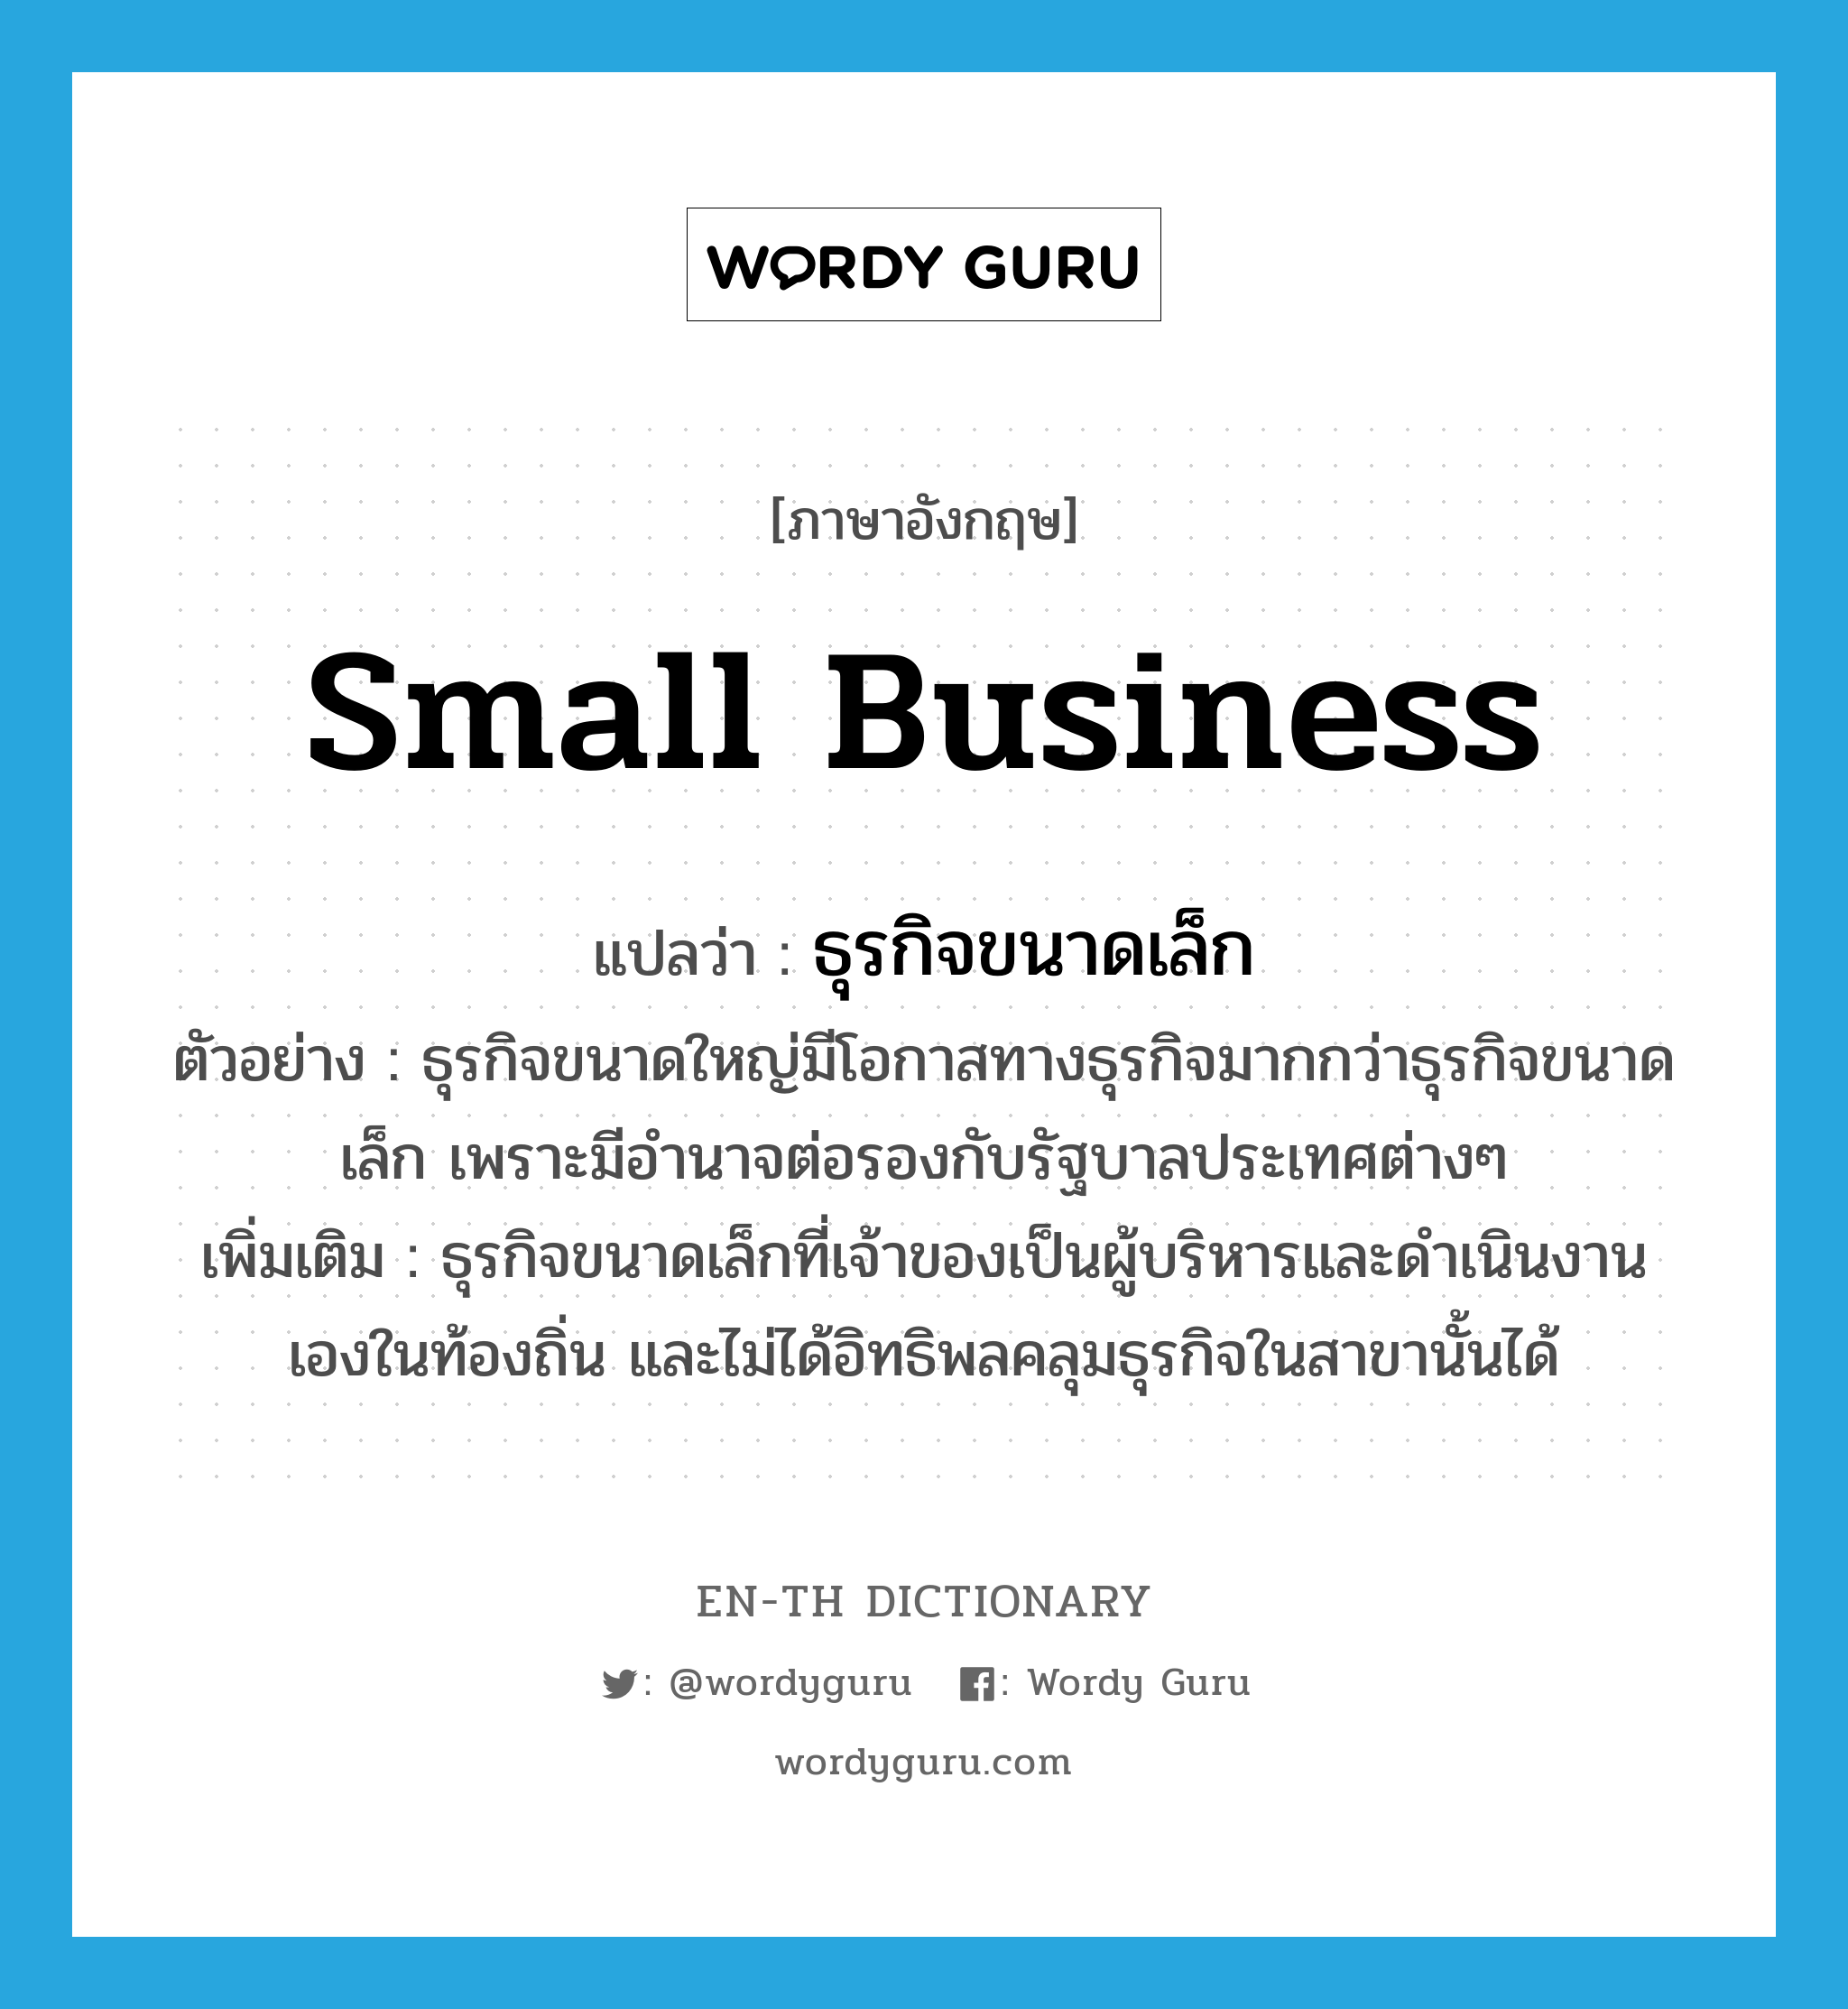 small business แปลว่า?, คำศัพท์ภาษาอังกฤษ small business แปลว่า ธุรกิจขนาดเล็ก ประเภท N ตัวอย่าง ธุรกิจขนาดใหญ่มีโอกาสทางธุรกิจมากกว่าธุรกิจขนาดเล็ก เพราะมีอำนาจต่อรองกับรัฐบาลประเทศต่างๆ เพิ่มเติม ธุรกิจขนาดเล็กที่เจ้าของเป็นผู้บริหารและดำเนินงานเองในท้องถิ่น และไม่ได้อิทธิพลคลุมธุรกิจในสาขานั้นได้ หมวด N